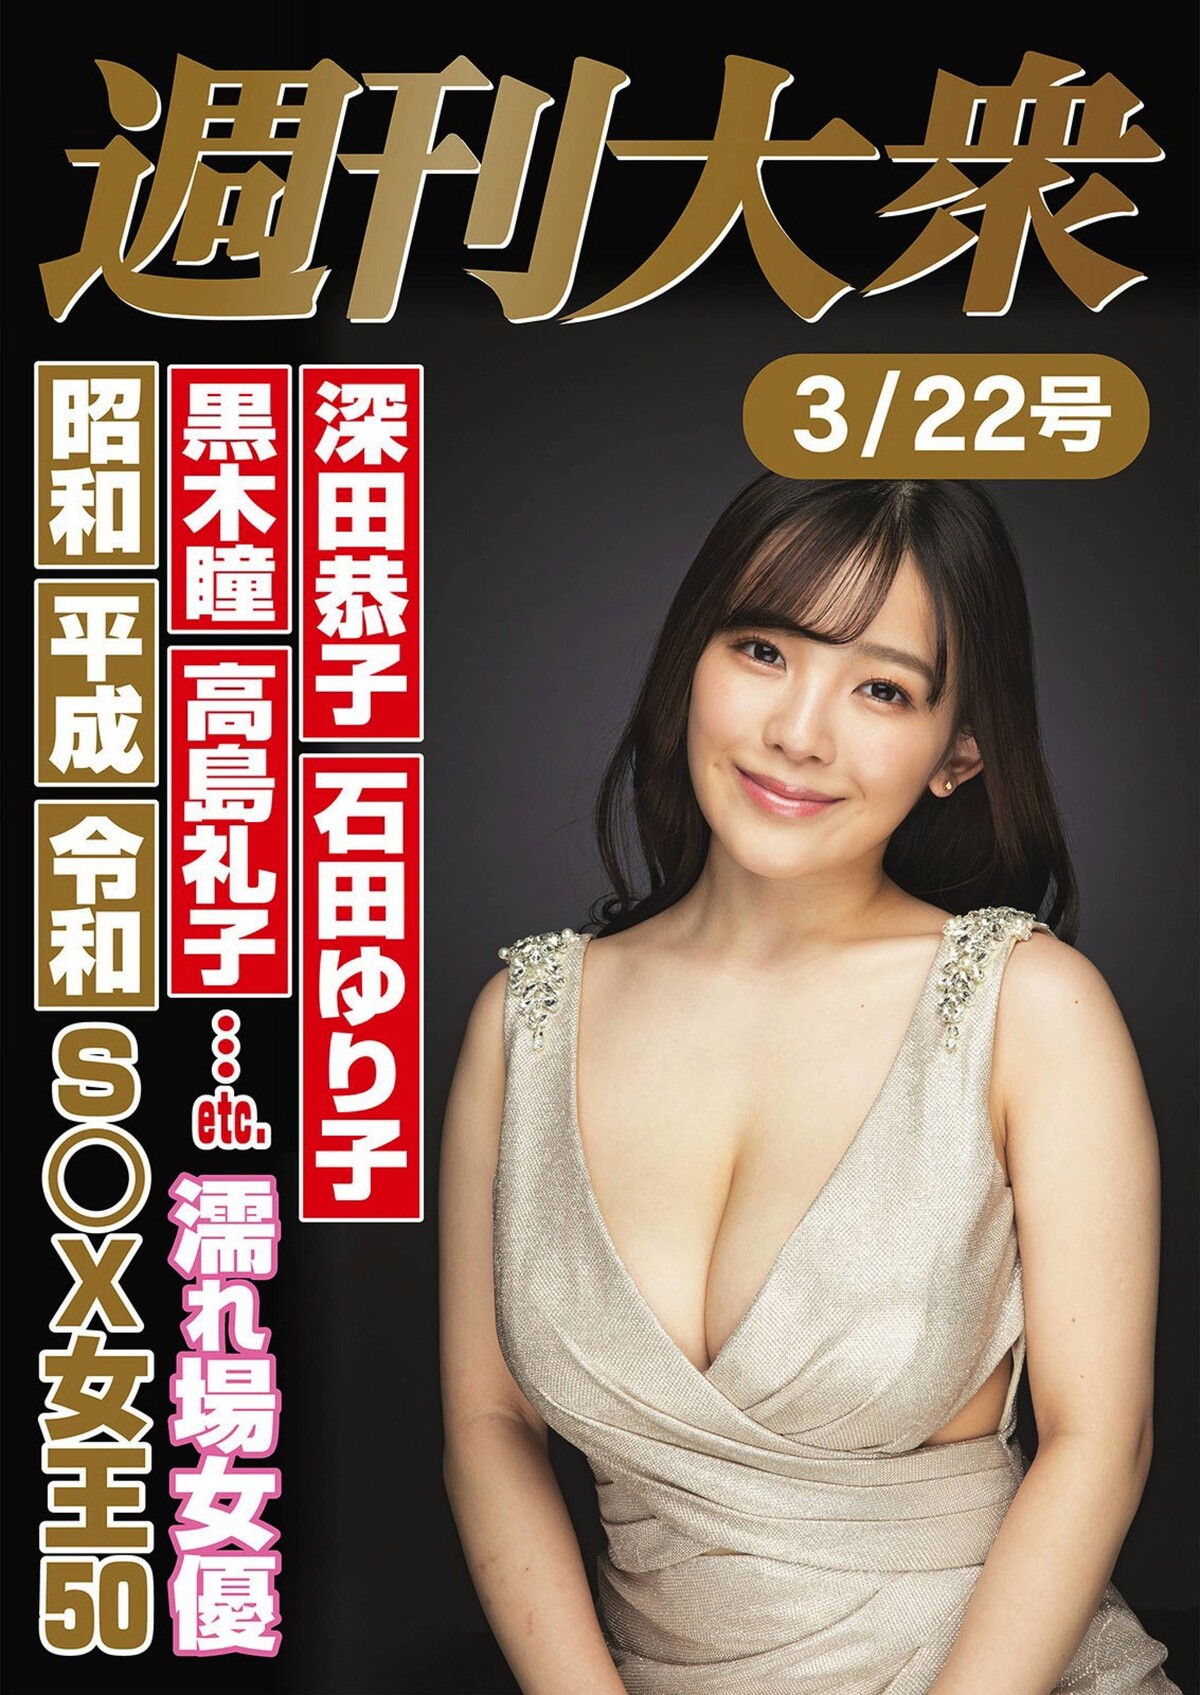 Jun Amaki 天木じゅん, Shukan Taishu 2021.03.22 (週刊大衆 2021年3月22日号)